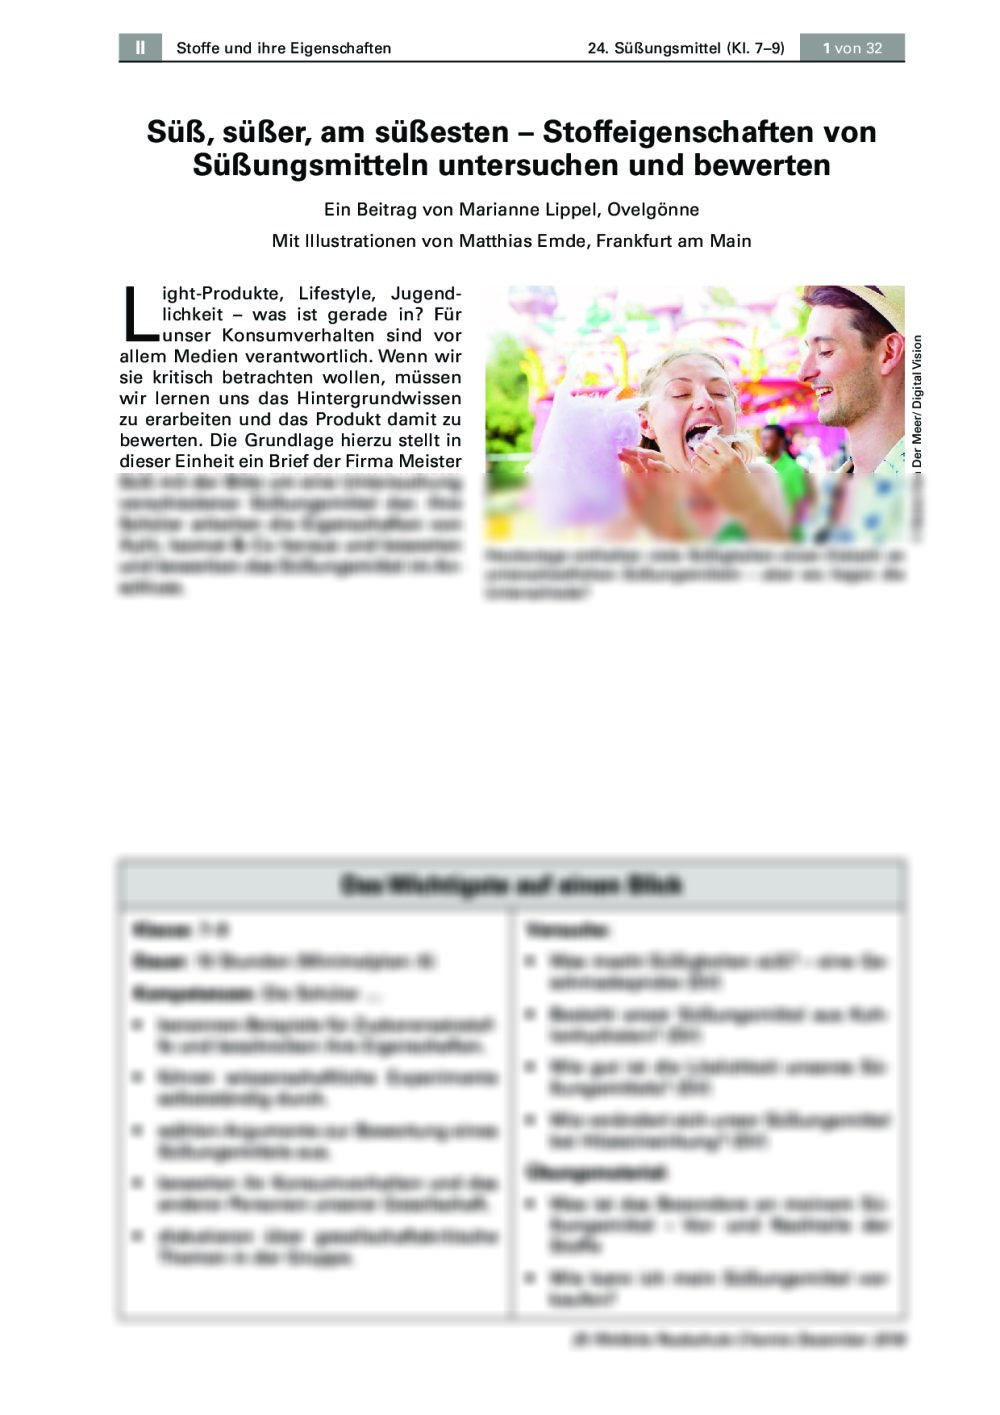 Stoffeigenschaften von Süßungsmitteln untersuchen und bewerten - Seite 1